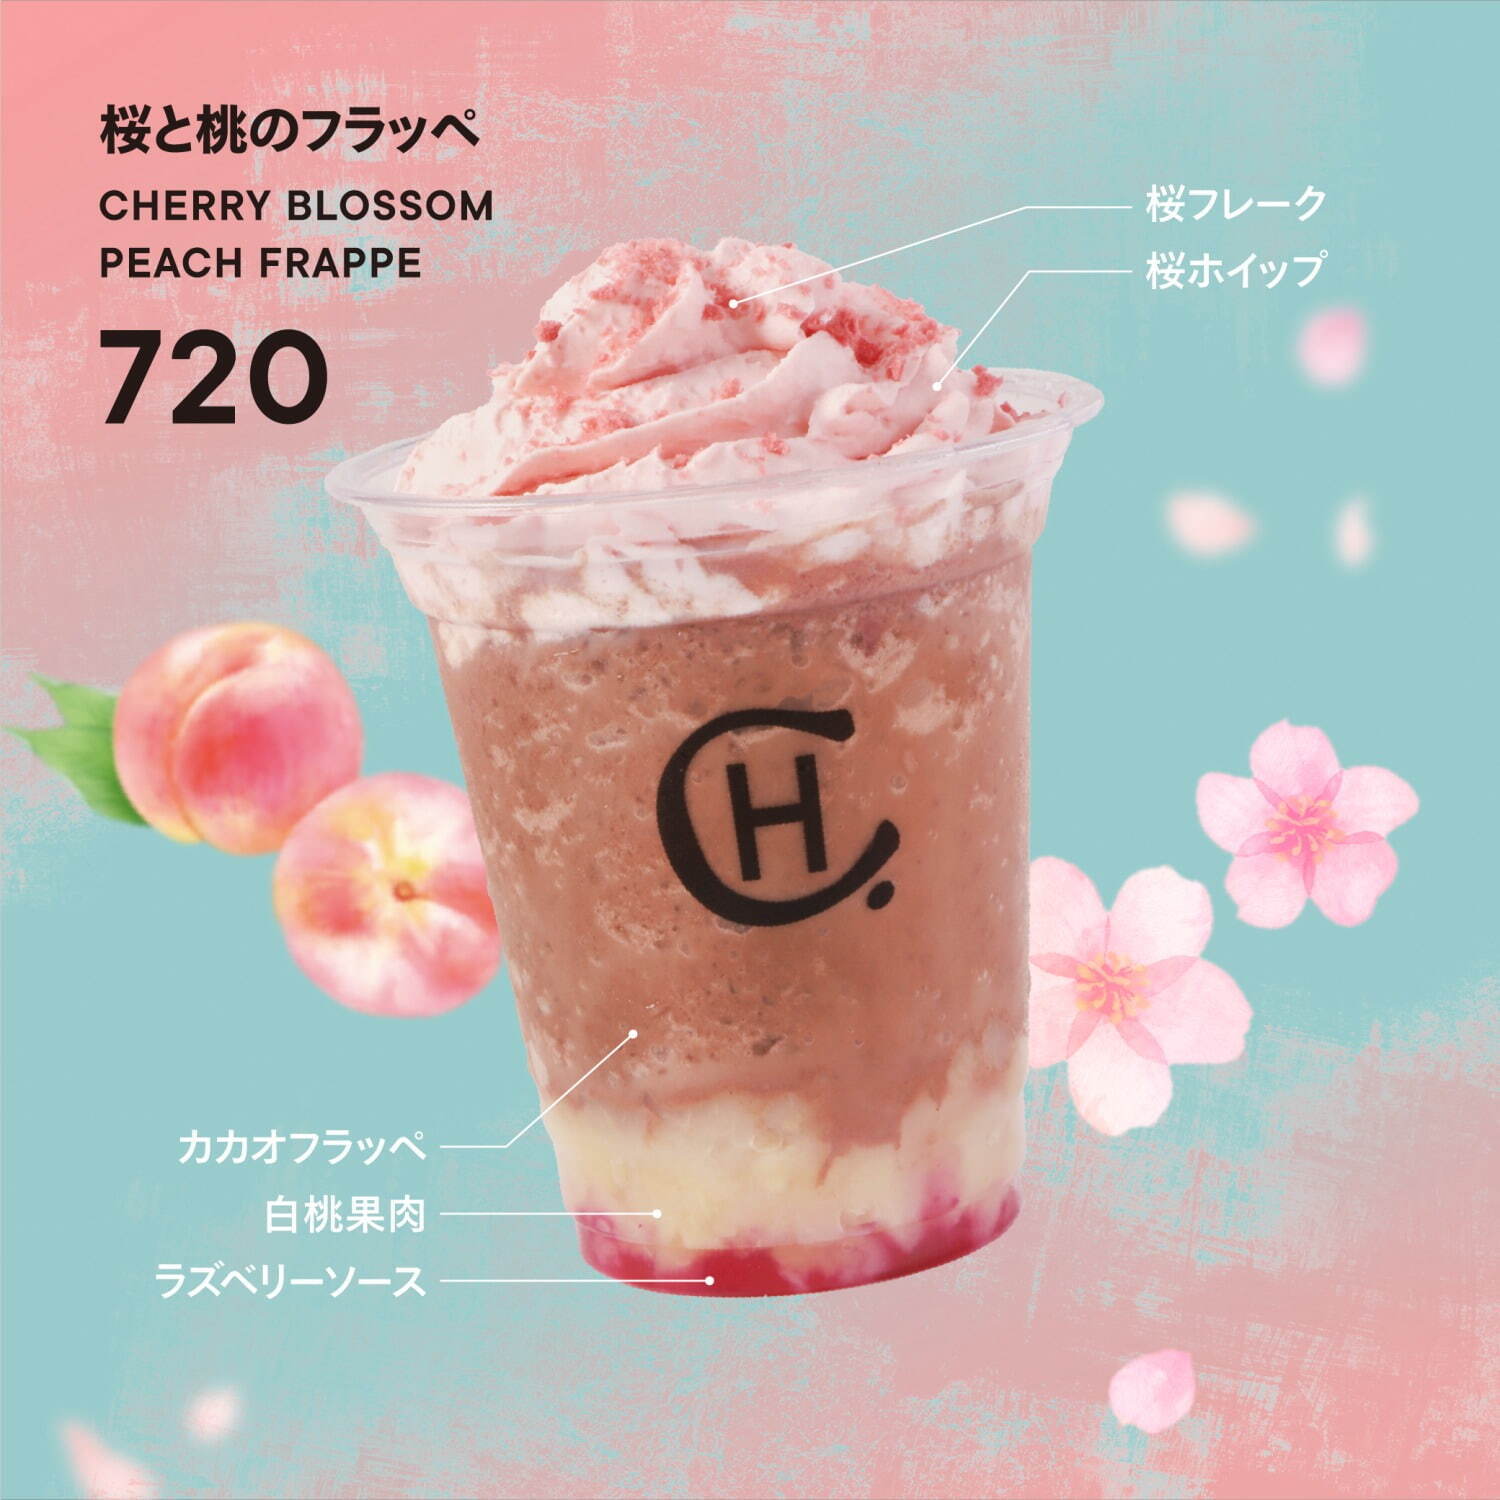 「桜と桃のフラッペ」720円